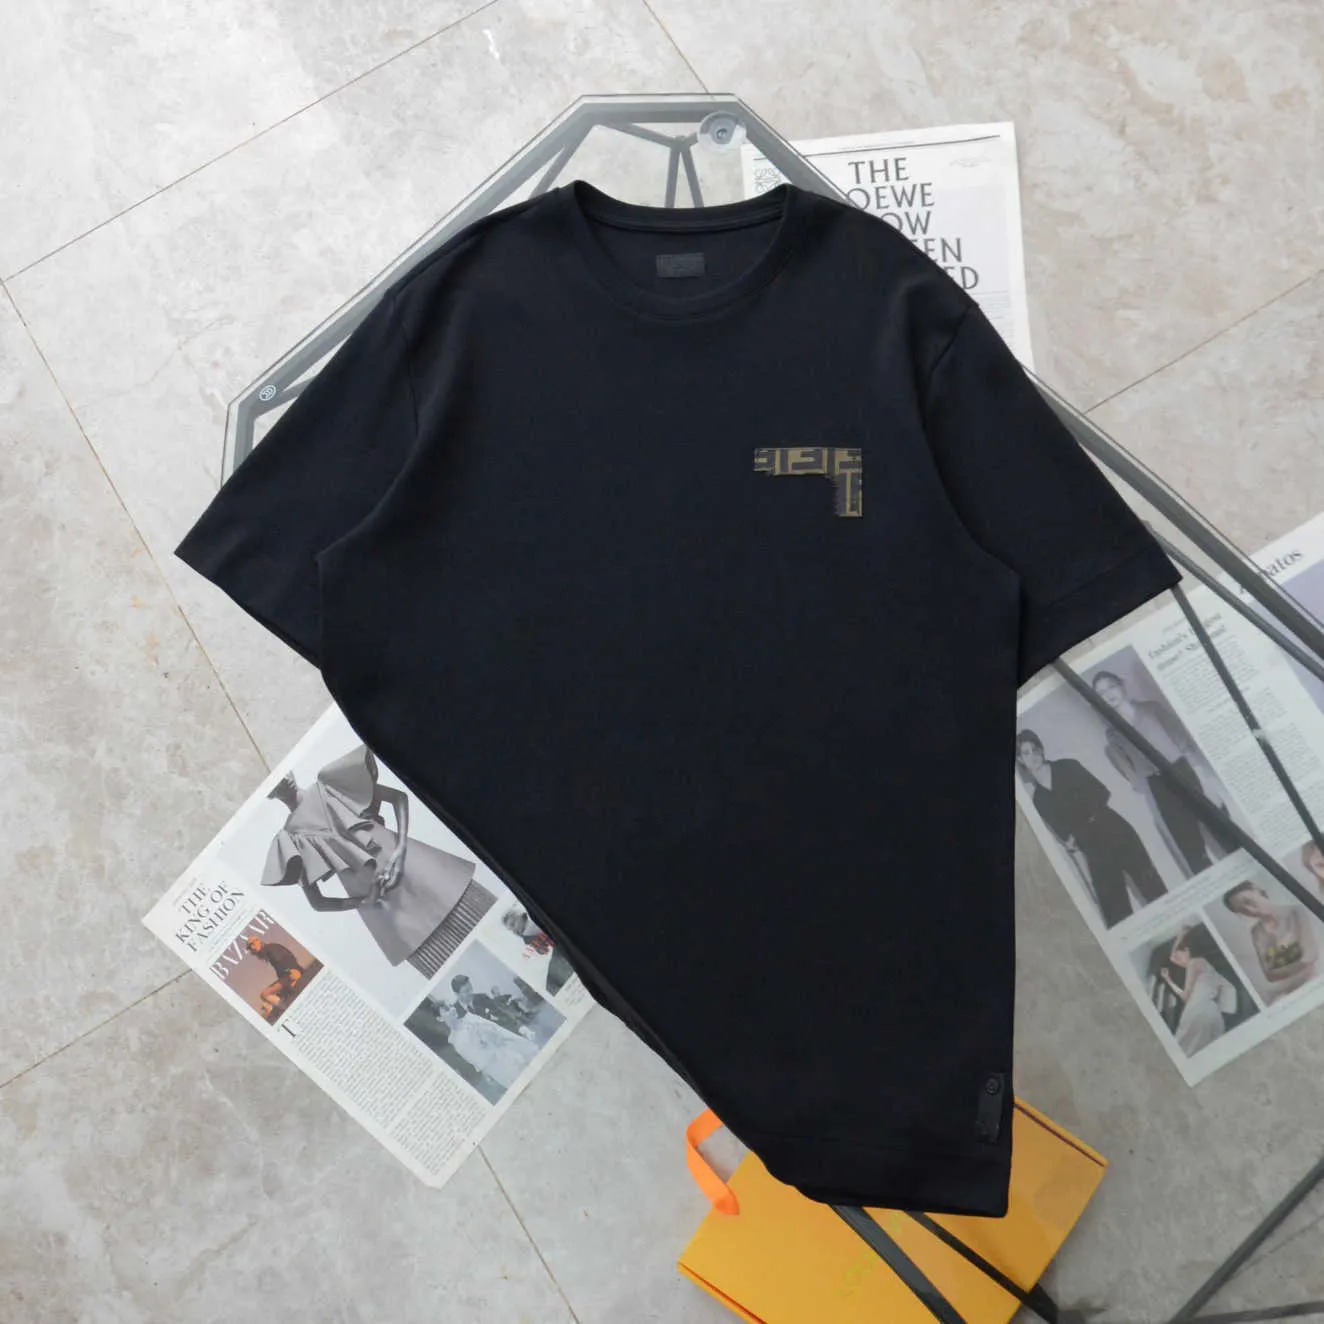 Camisa de diseñador para hombres Fenjia Xia Estilo Pecho Etiqueta de cuero floral Negro Peso de doble gramo Tela de alta gama que no se encoge Hombres y mujeres Misma camiseta de manga corta Iexz